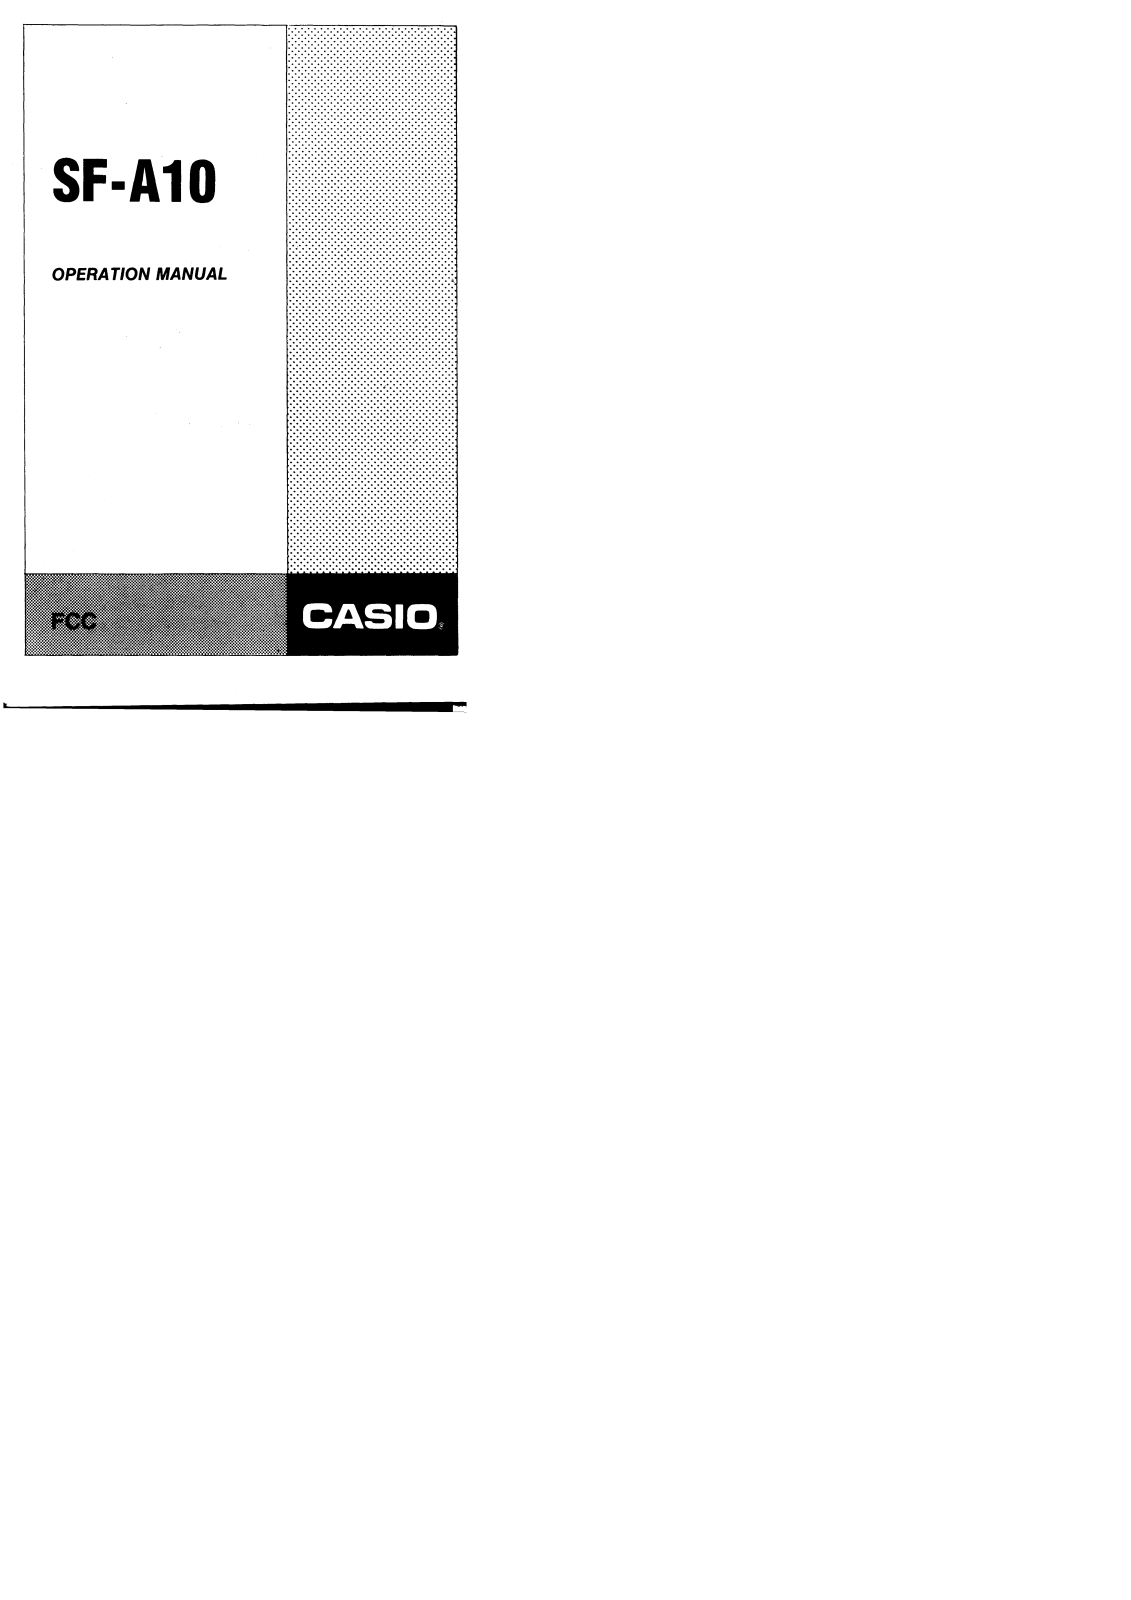 CASIO SF-A10 User Manual